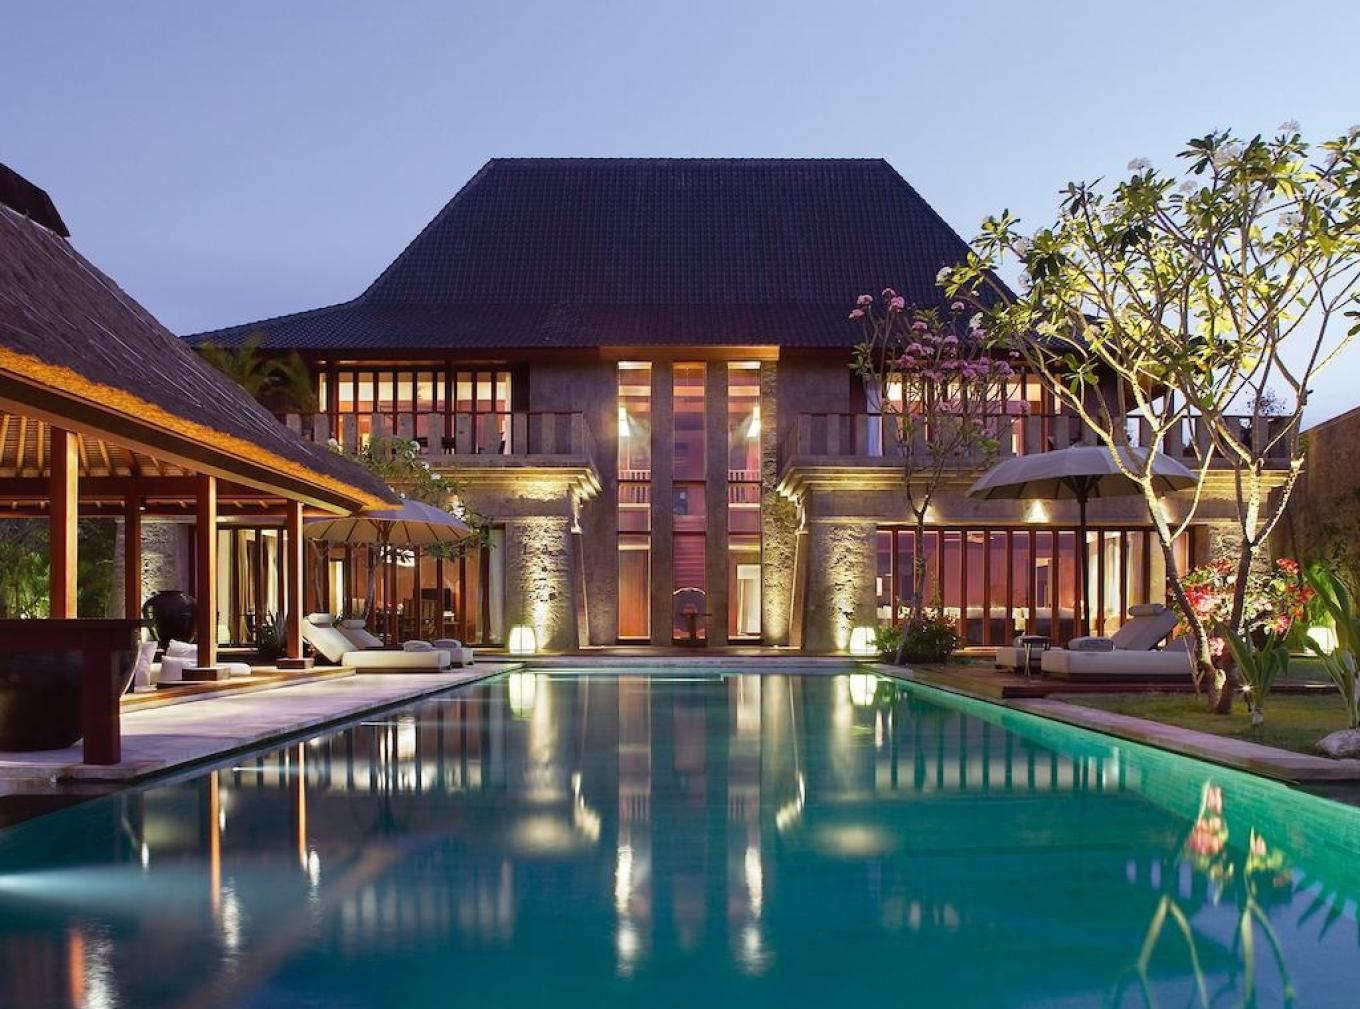 巴厘岛金巴兰艾美酒店Le Meridien Jimbaran – 爱岛人 海岛旅行专家